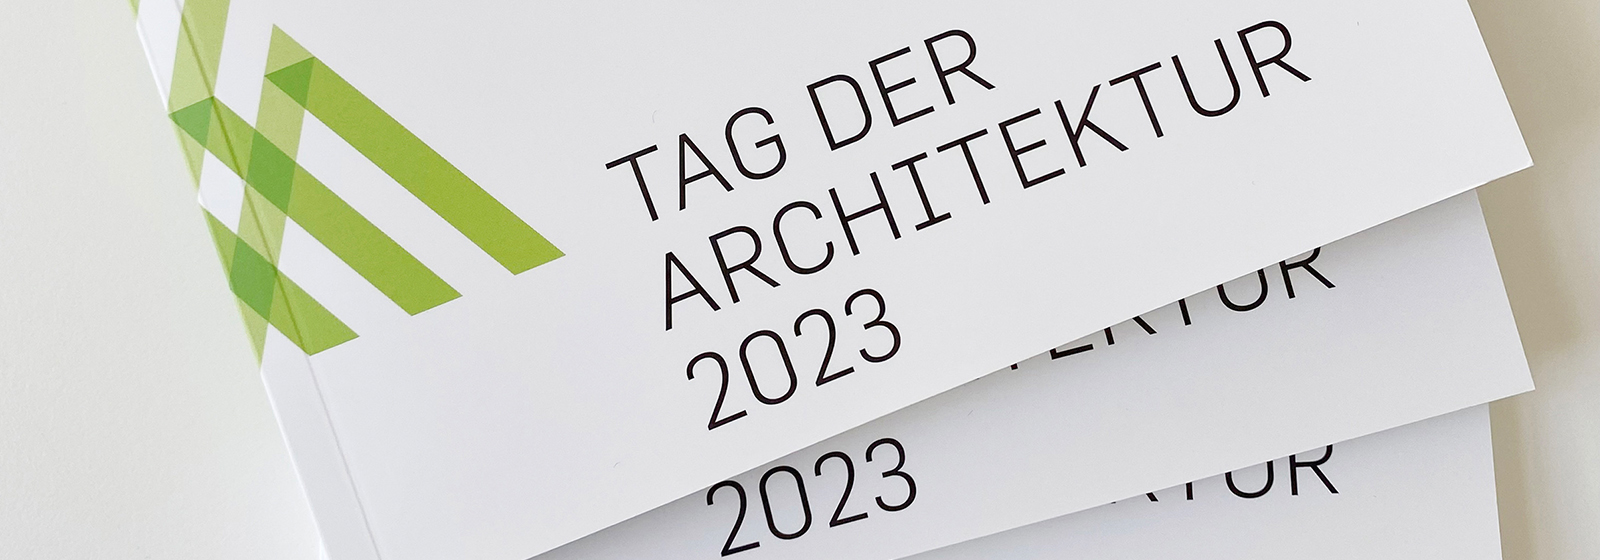 Tag der Architektur 2023